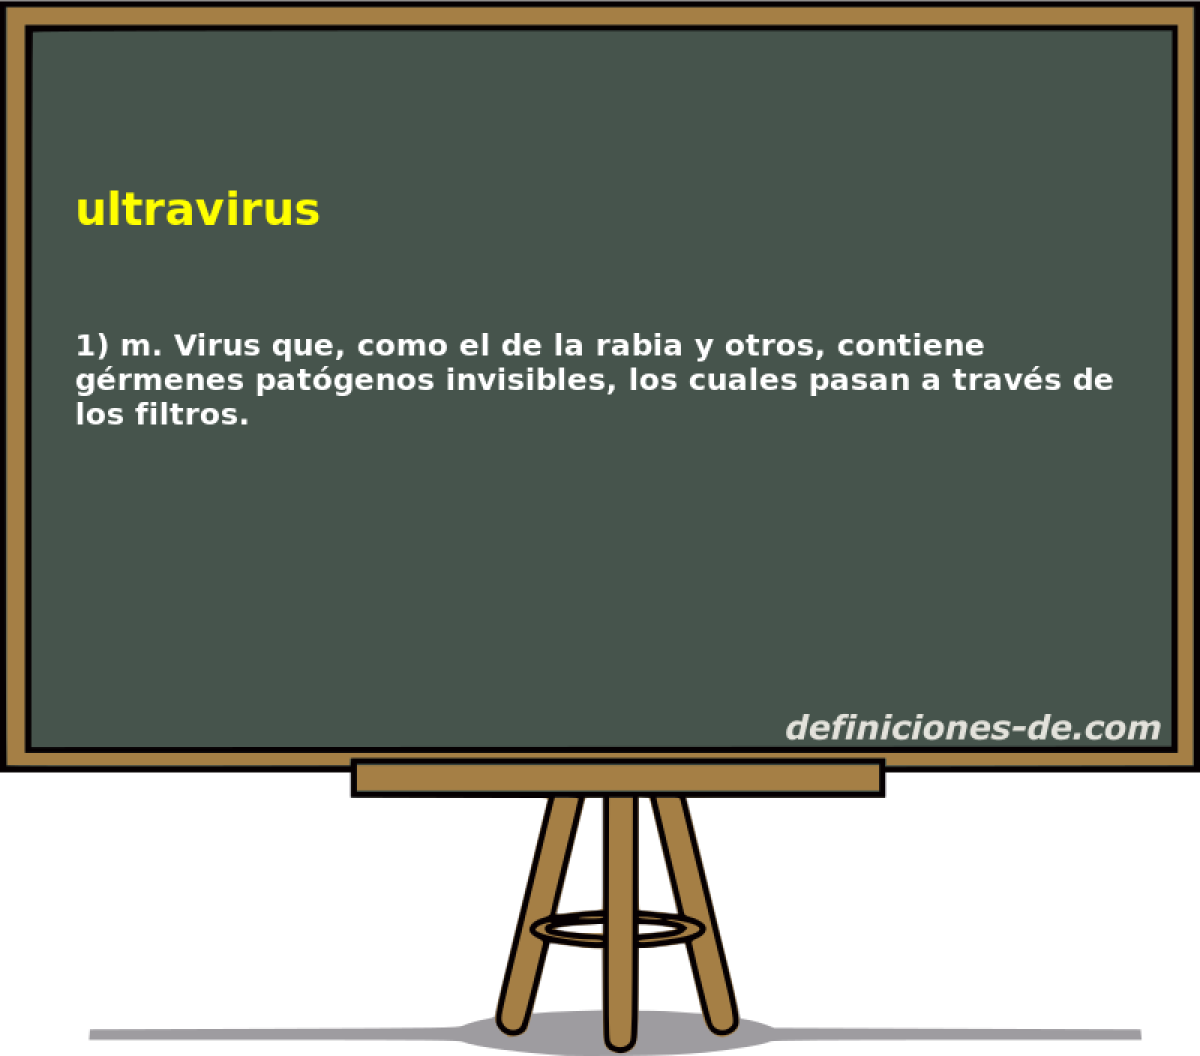 ultravirus 